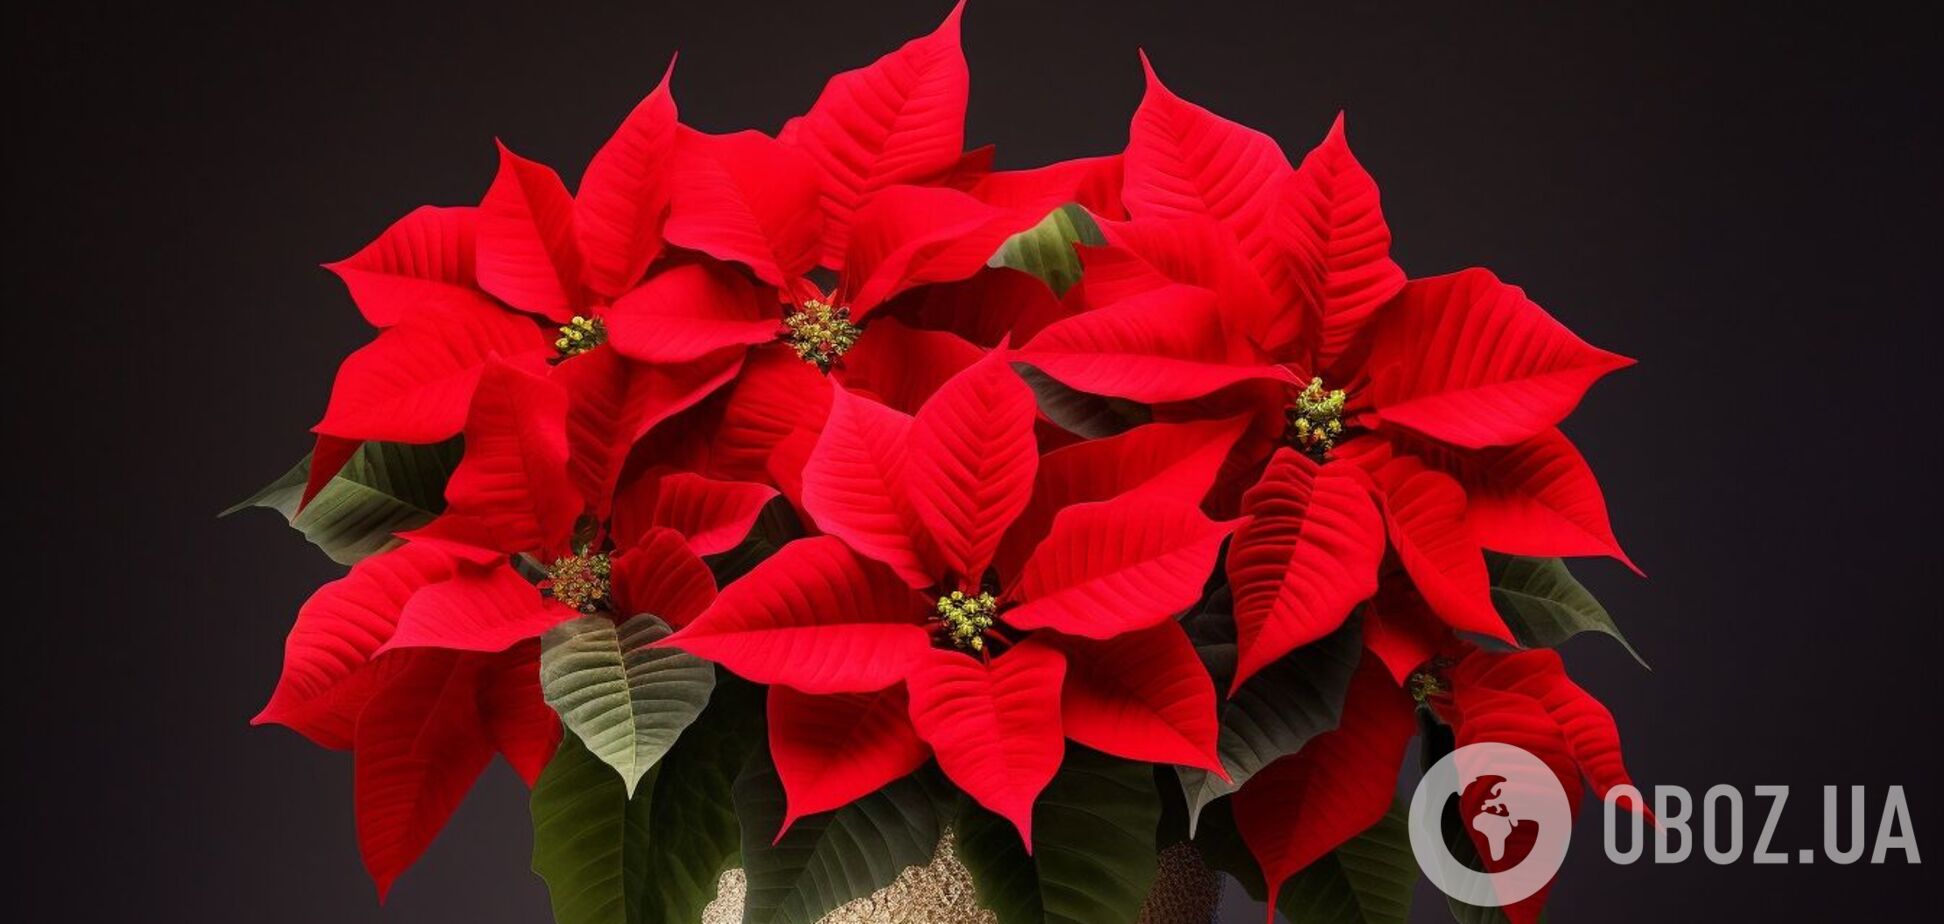 Пуансетія цвістиме навіть після Різдва: як правильно доглядати за квіткою